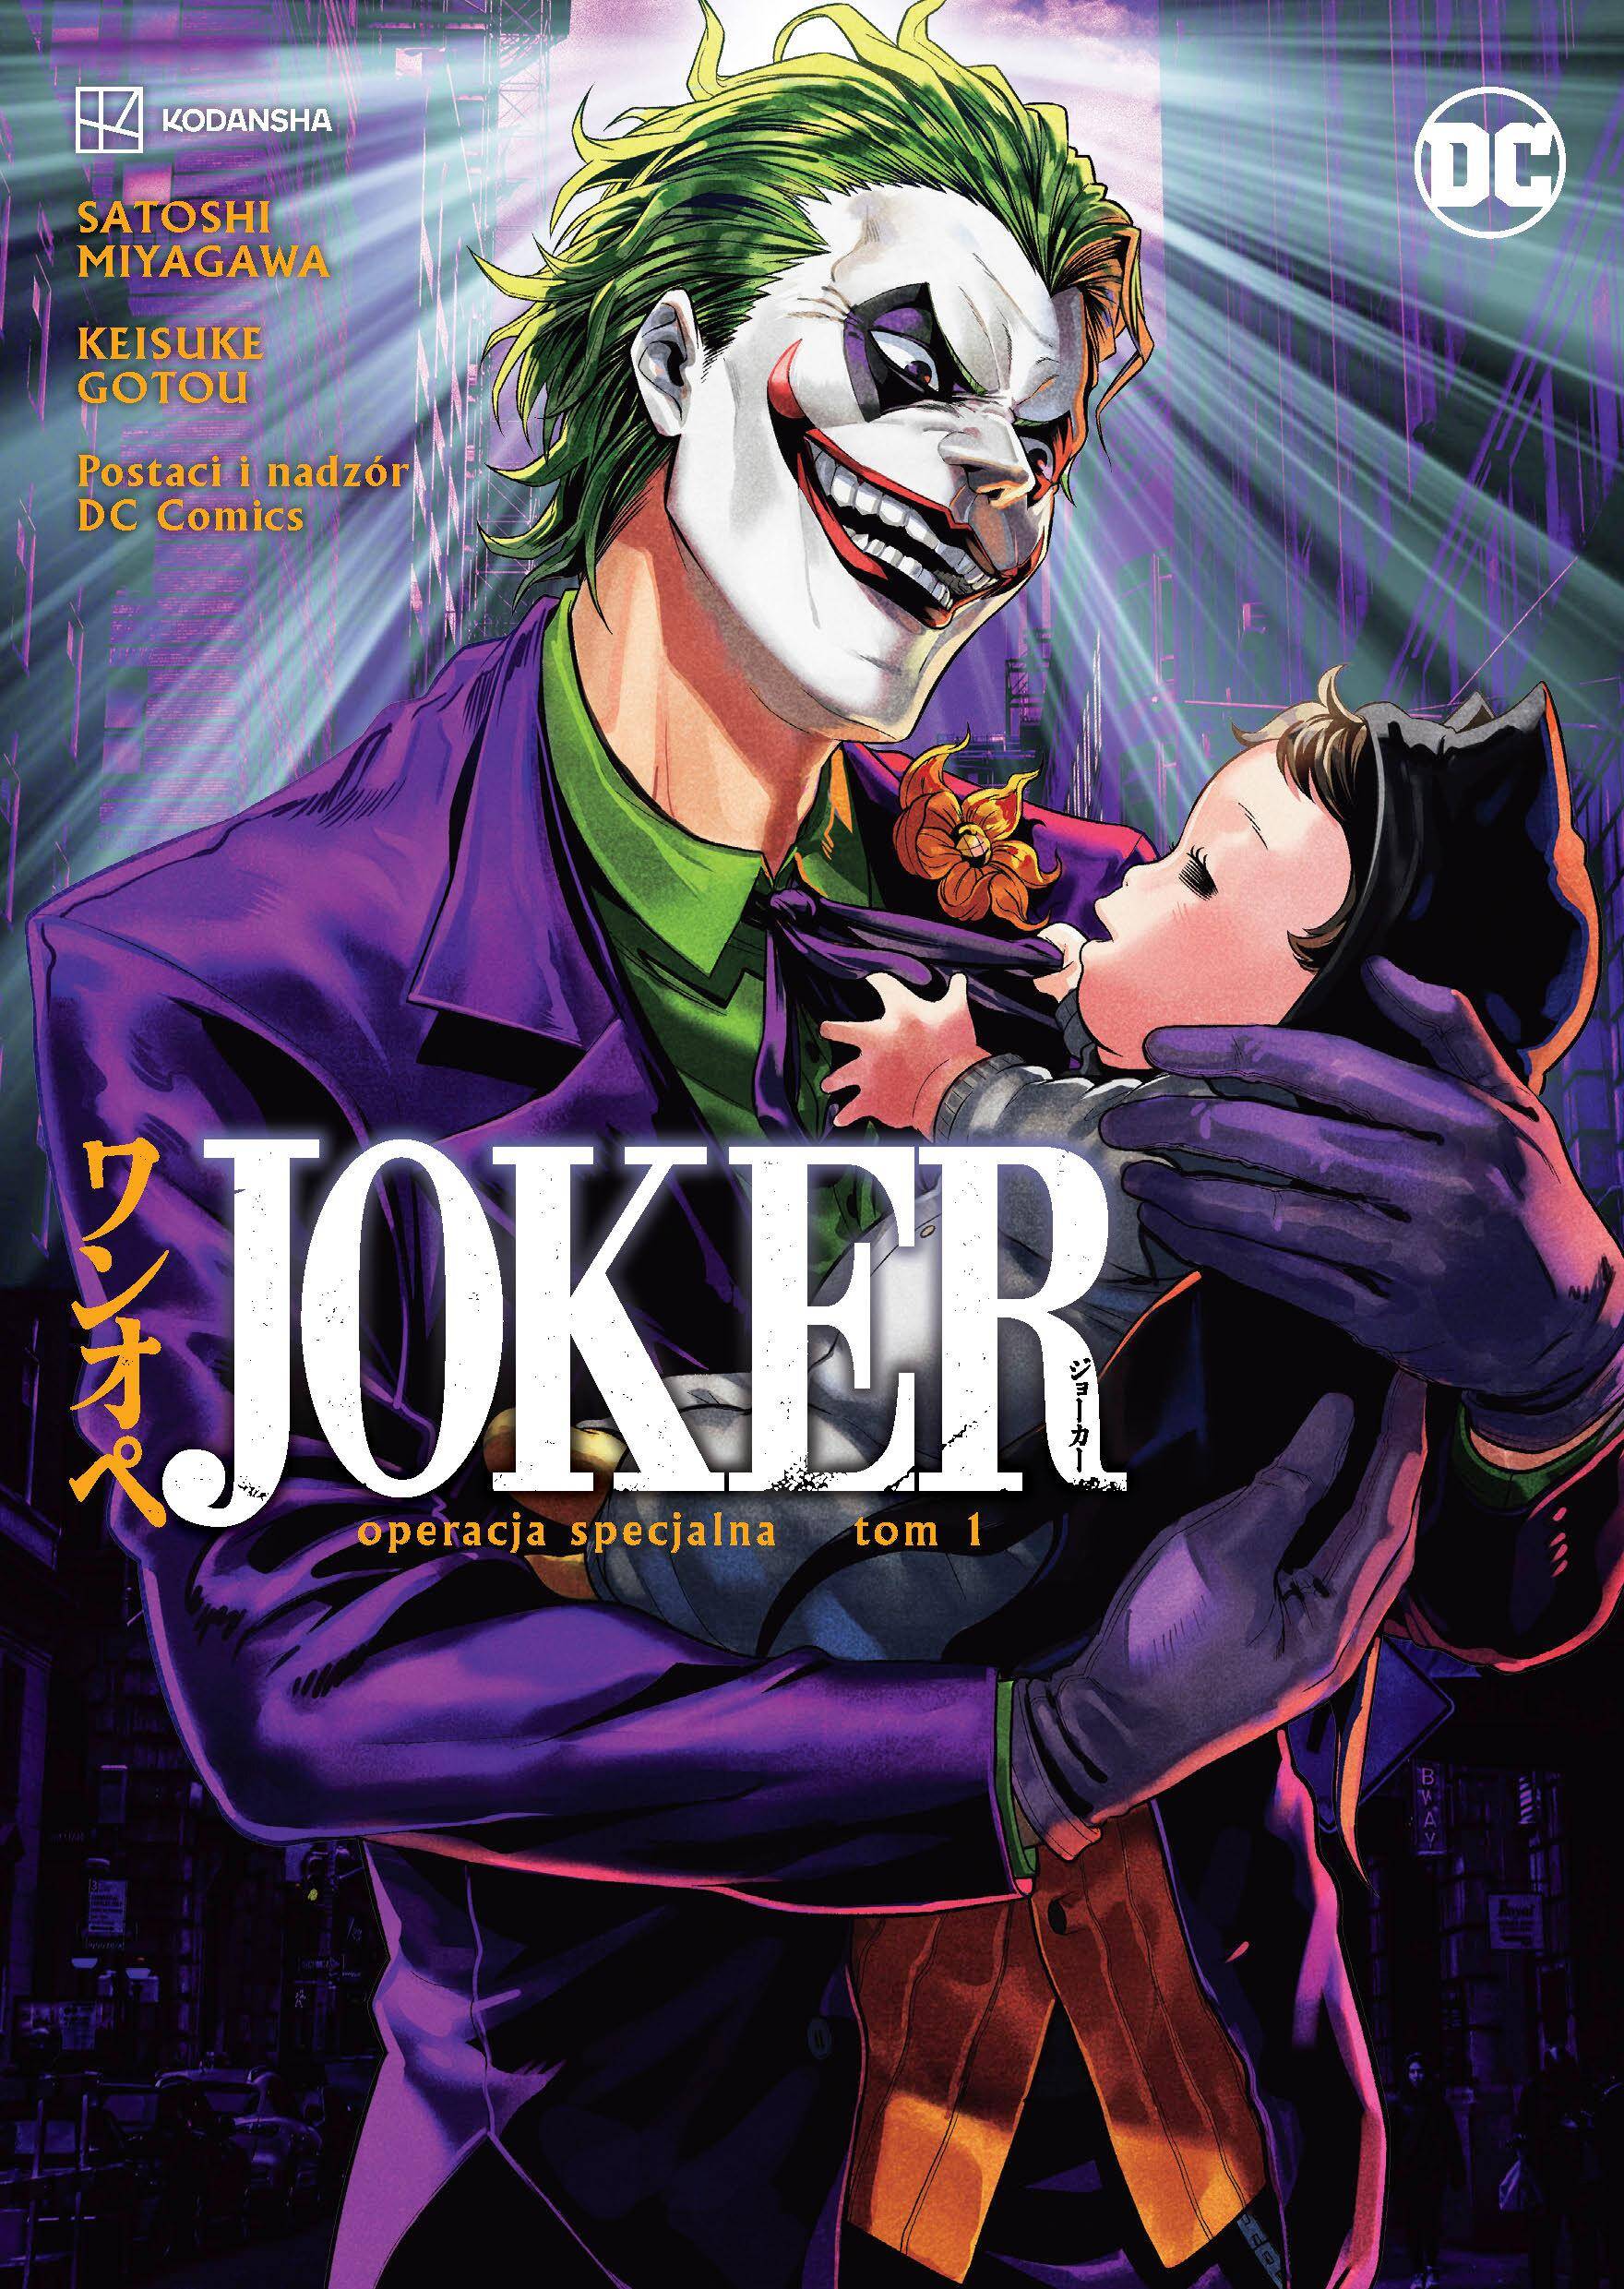 Operacja specjalna. Joker. Manga. Tom 1